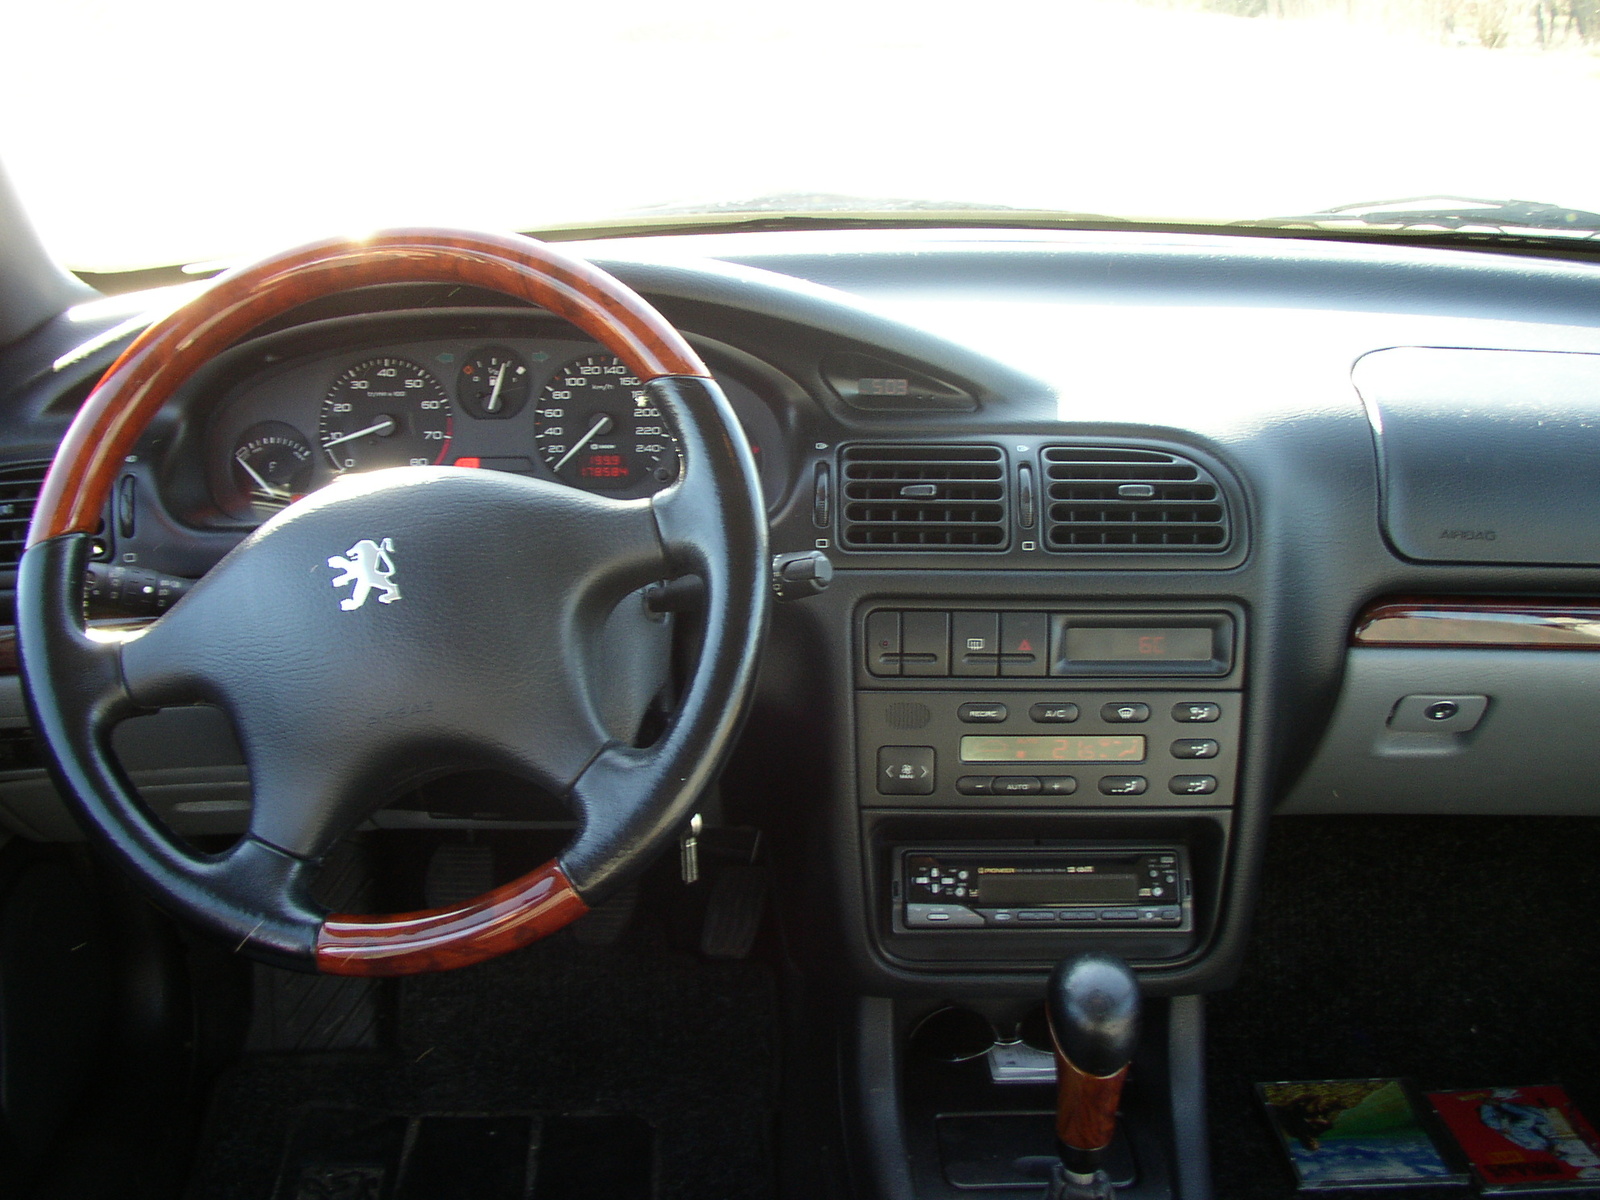 PEUGEOT 406 interior